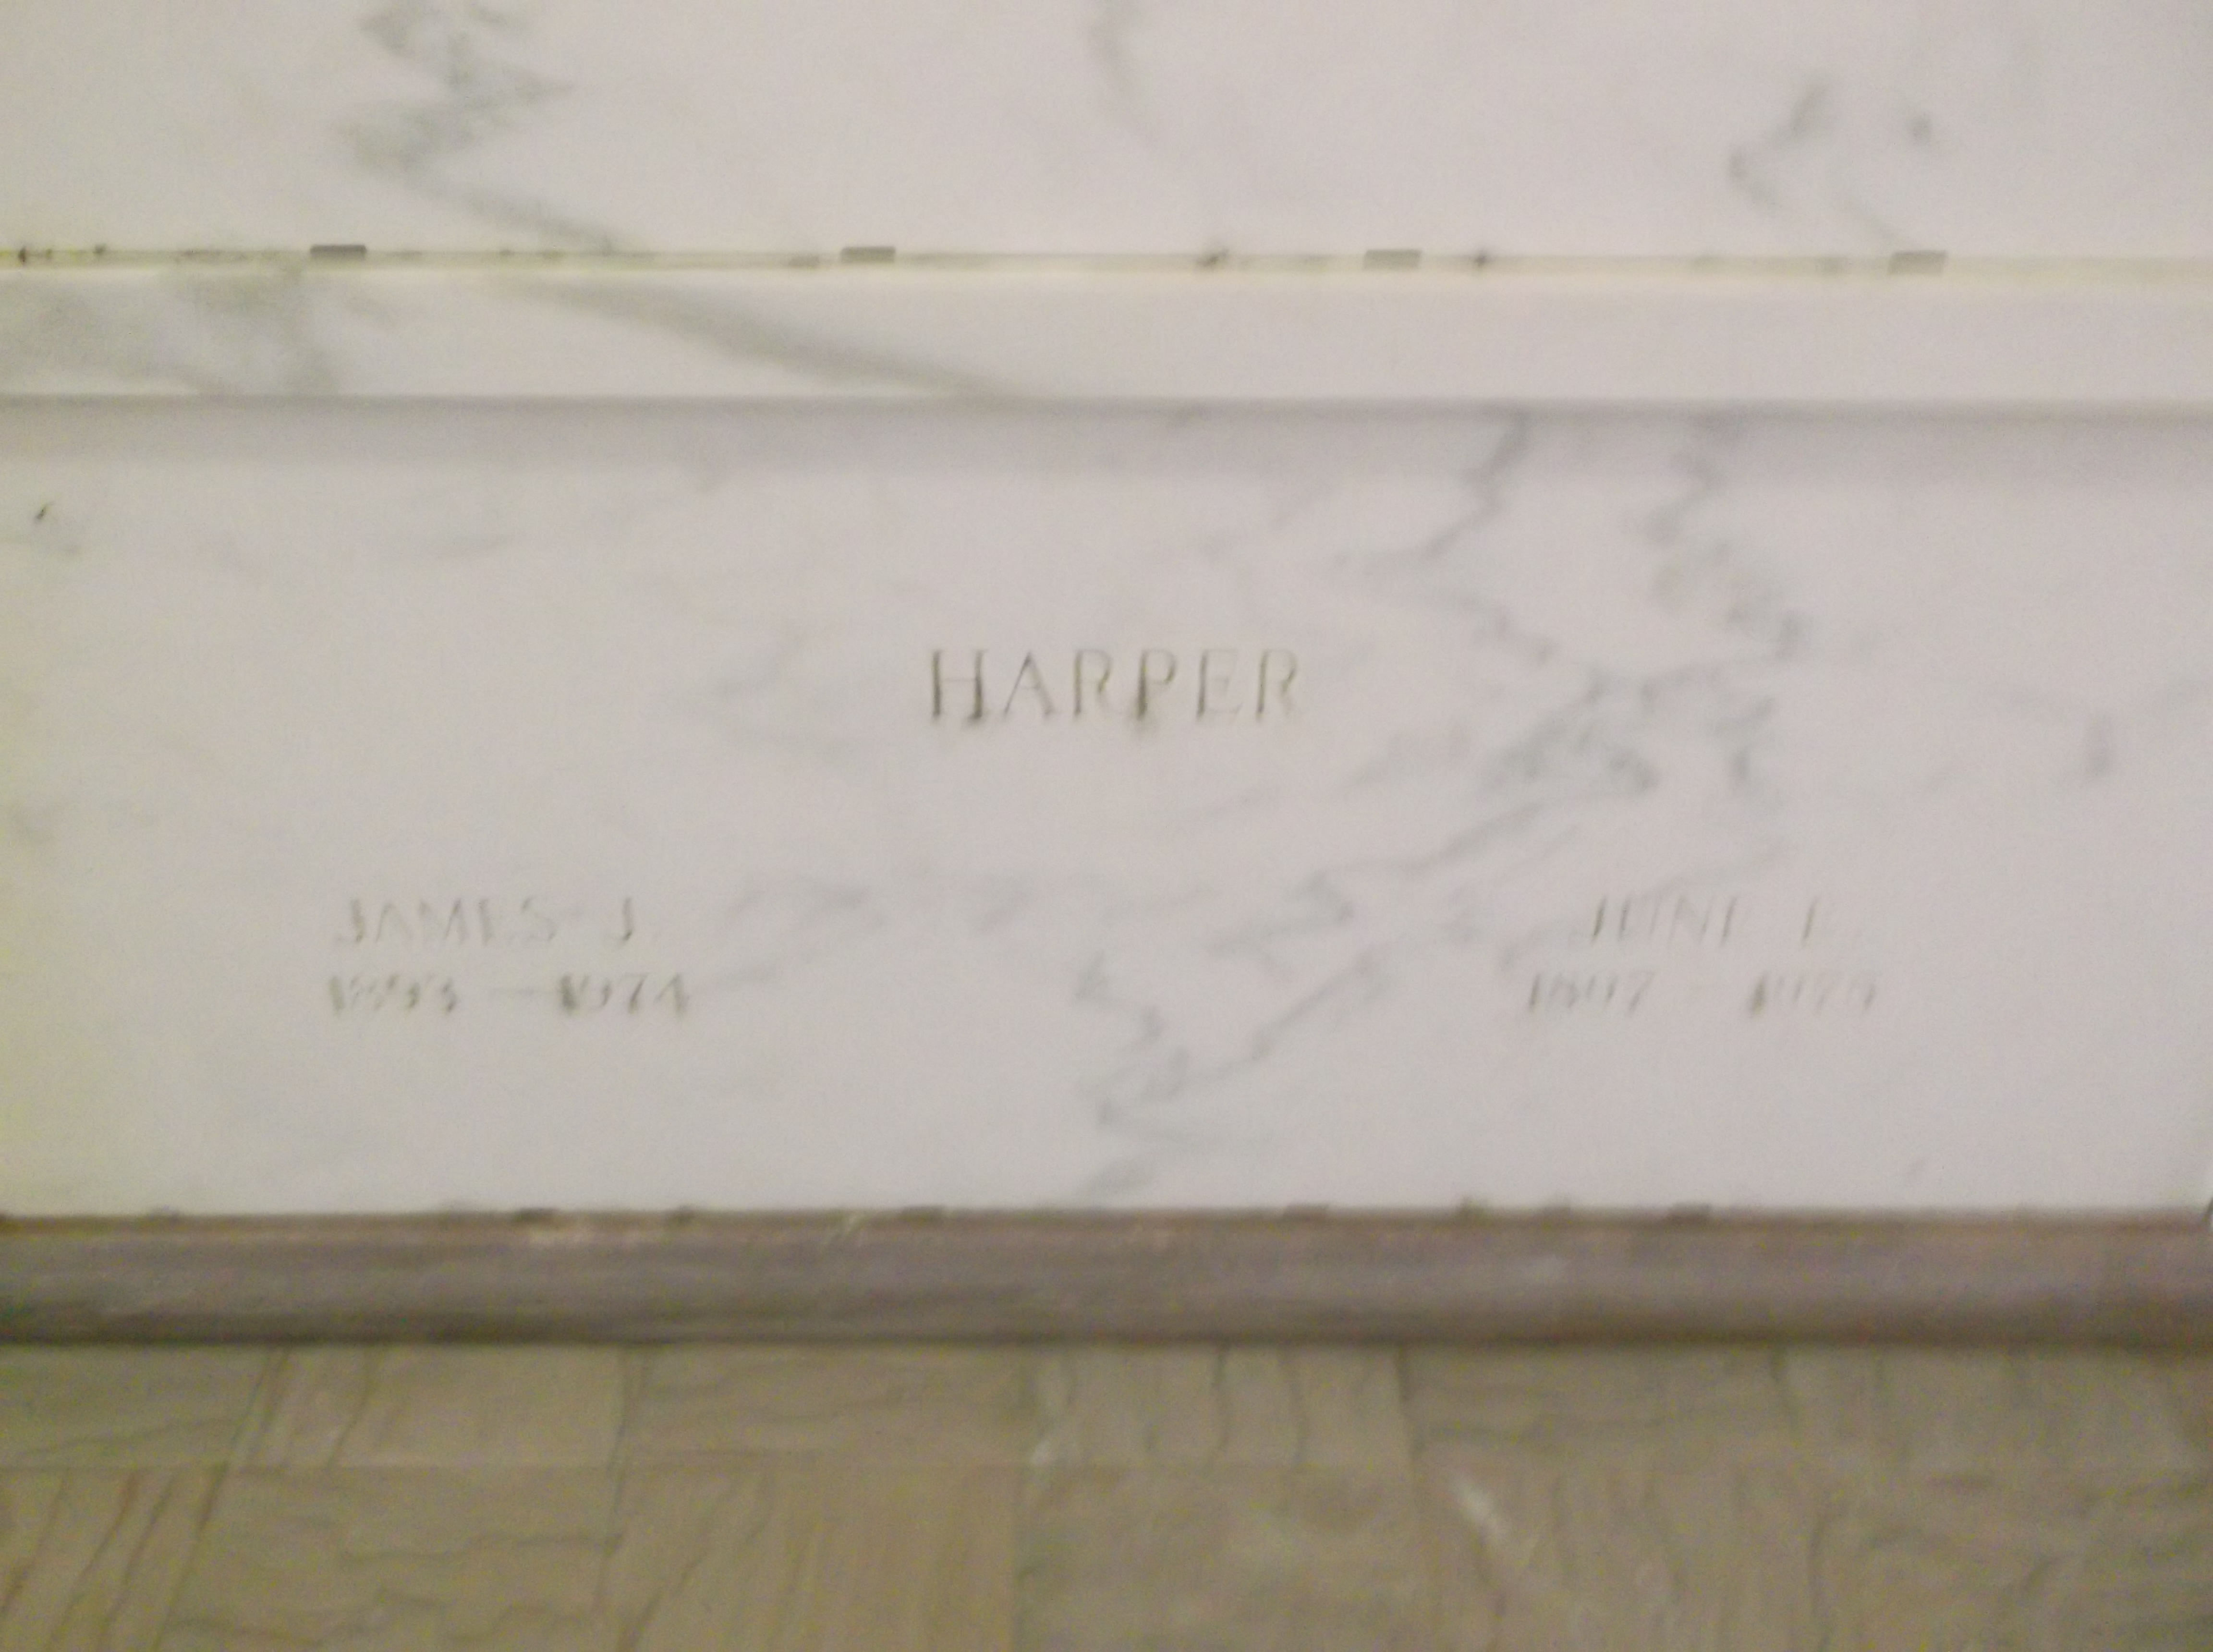 June E Harper